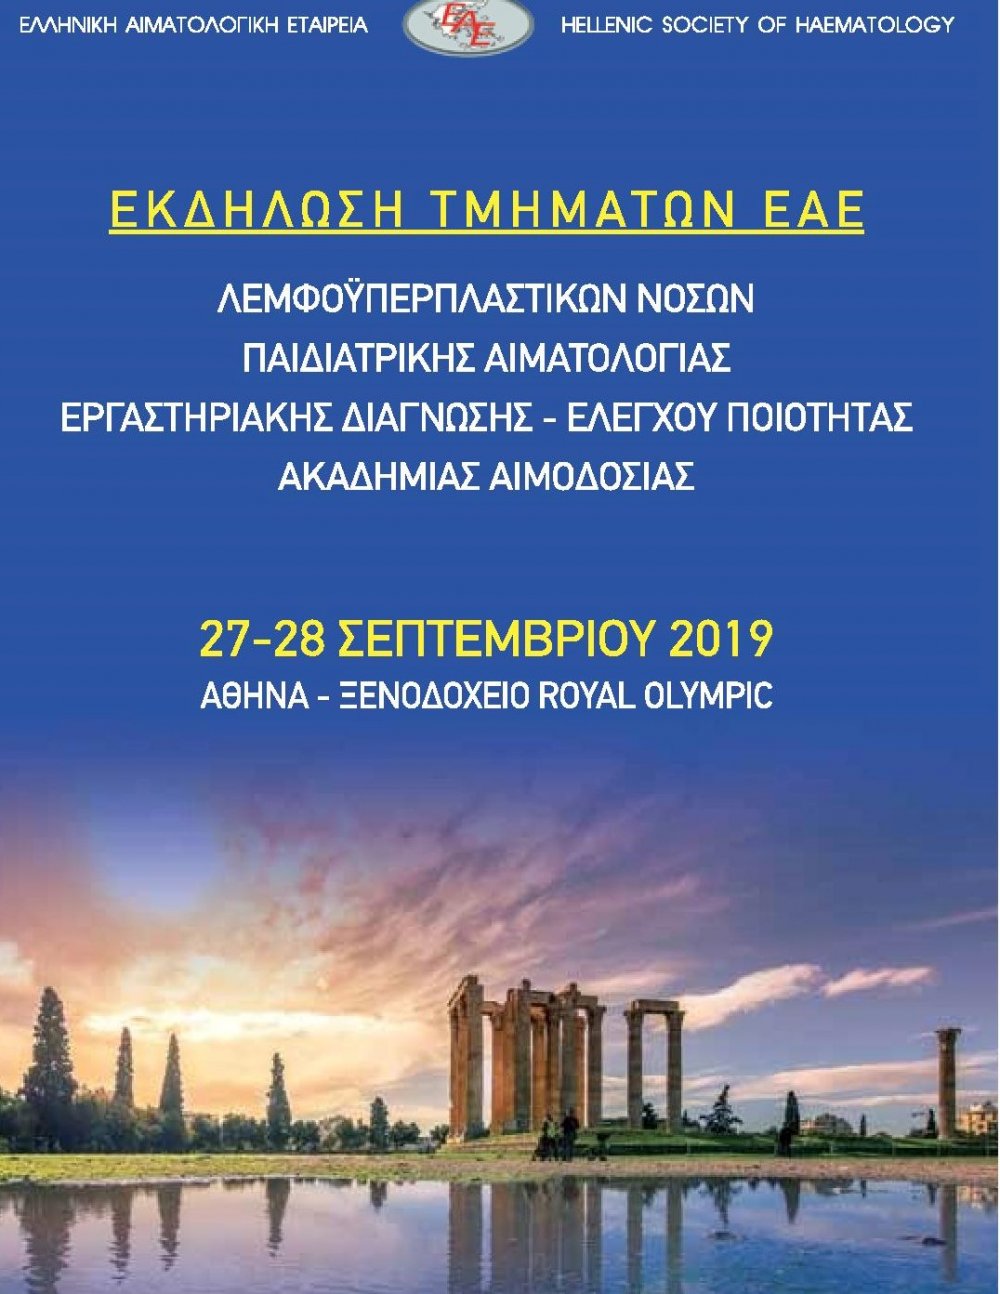 Πρόγραμμα Εκδήλωσης Τμημάτων «Λεμφοϋπερπλαστικών Νόσων», «Εργαστηριακής Διάγνωσης &amp; Ελέγχου Ποιότητας», «Παιδιατρικής Αιματολογίας» και Ακαδημίας Αιμοδοσίας Ε.Α.Ε 27 &amp; 28 Σεπτεμβρίου 2019 – Αθήνα, Ξενοδοχείο ROYAL OLYMPIC